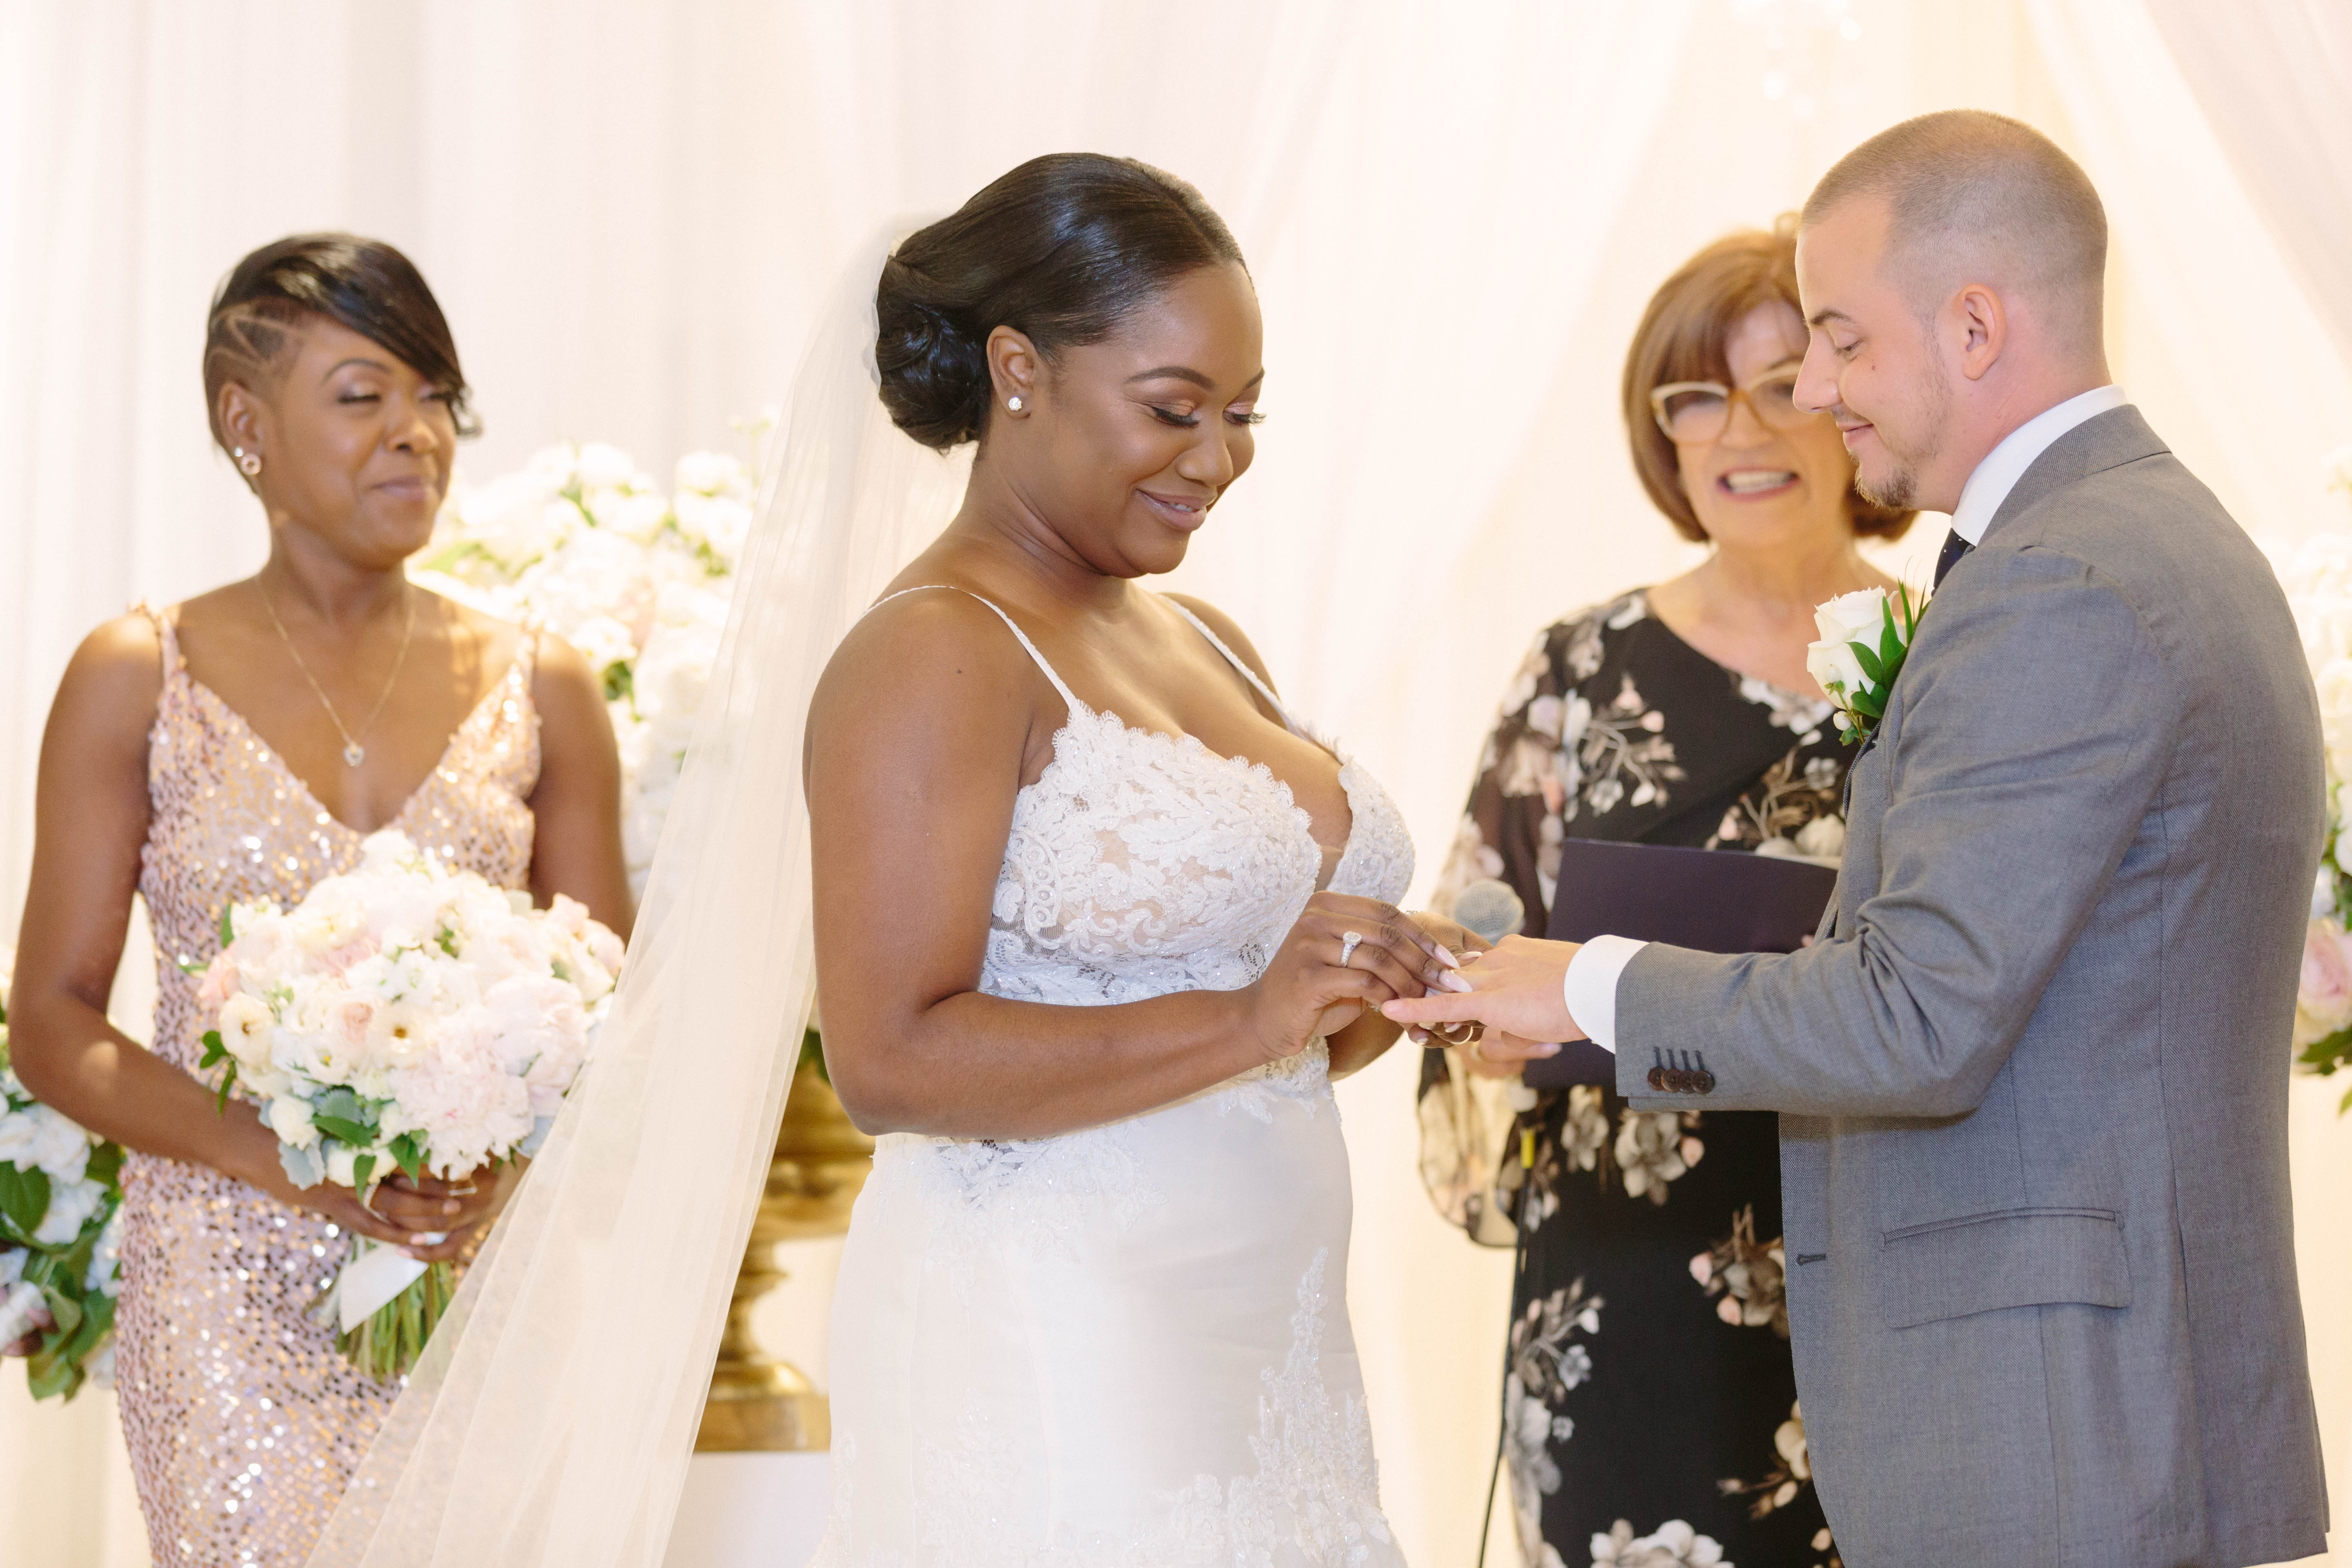 bride and groom exchange rings